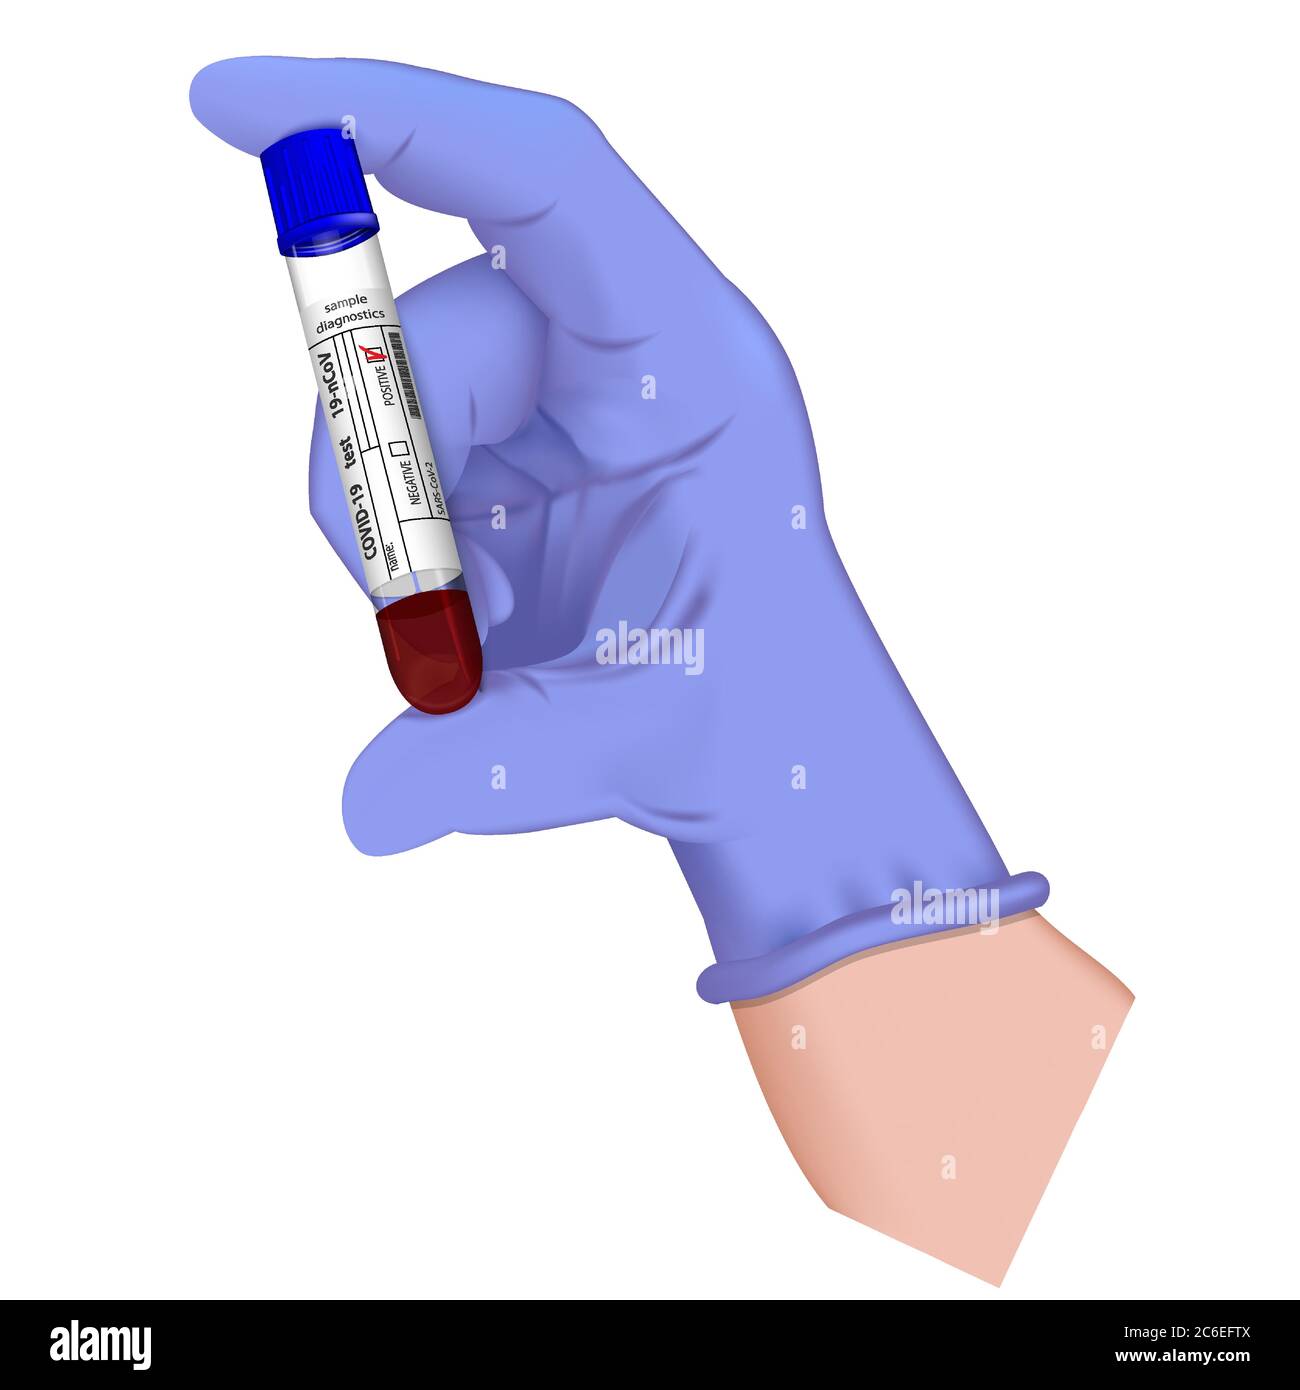 Hand in medizinischen Handschuh hält Reagenzglas mit Blutprobe für die Diagnose Covid 19 Virus. Positives Ergebnis für den Test Coronavirus 2019-nCoV. Realistisches 3d i Stock Vektor